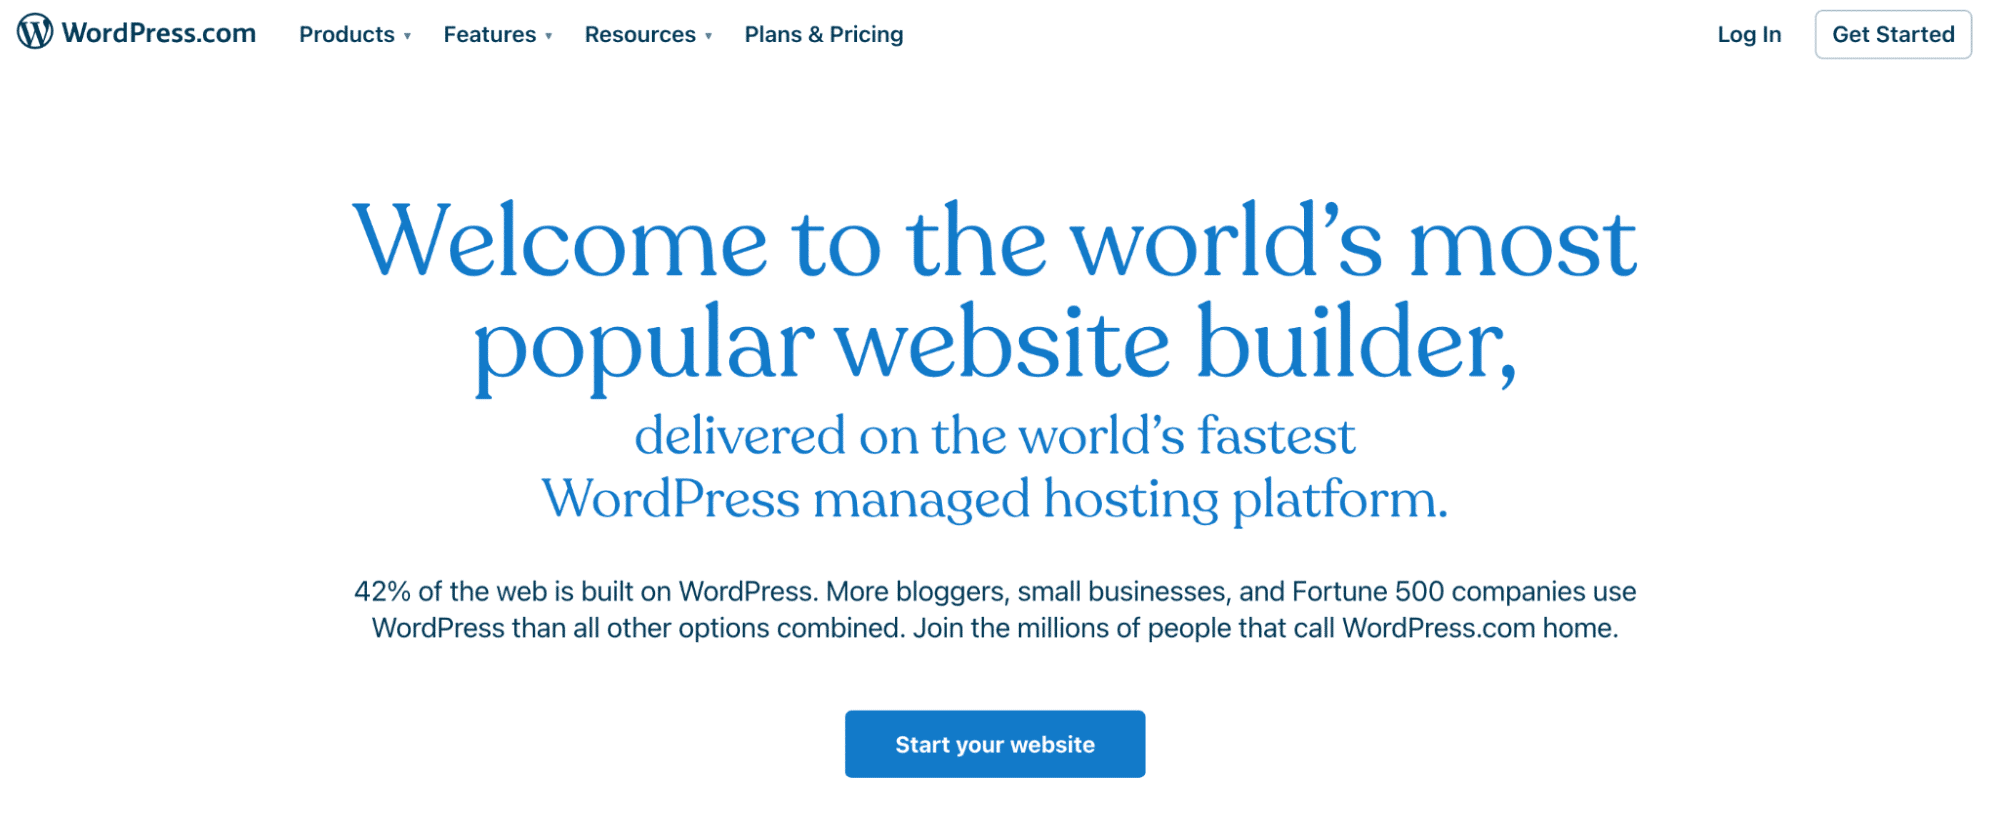 Página inicial do WordPress.com